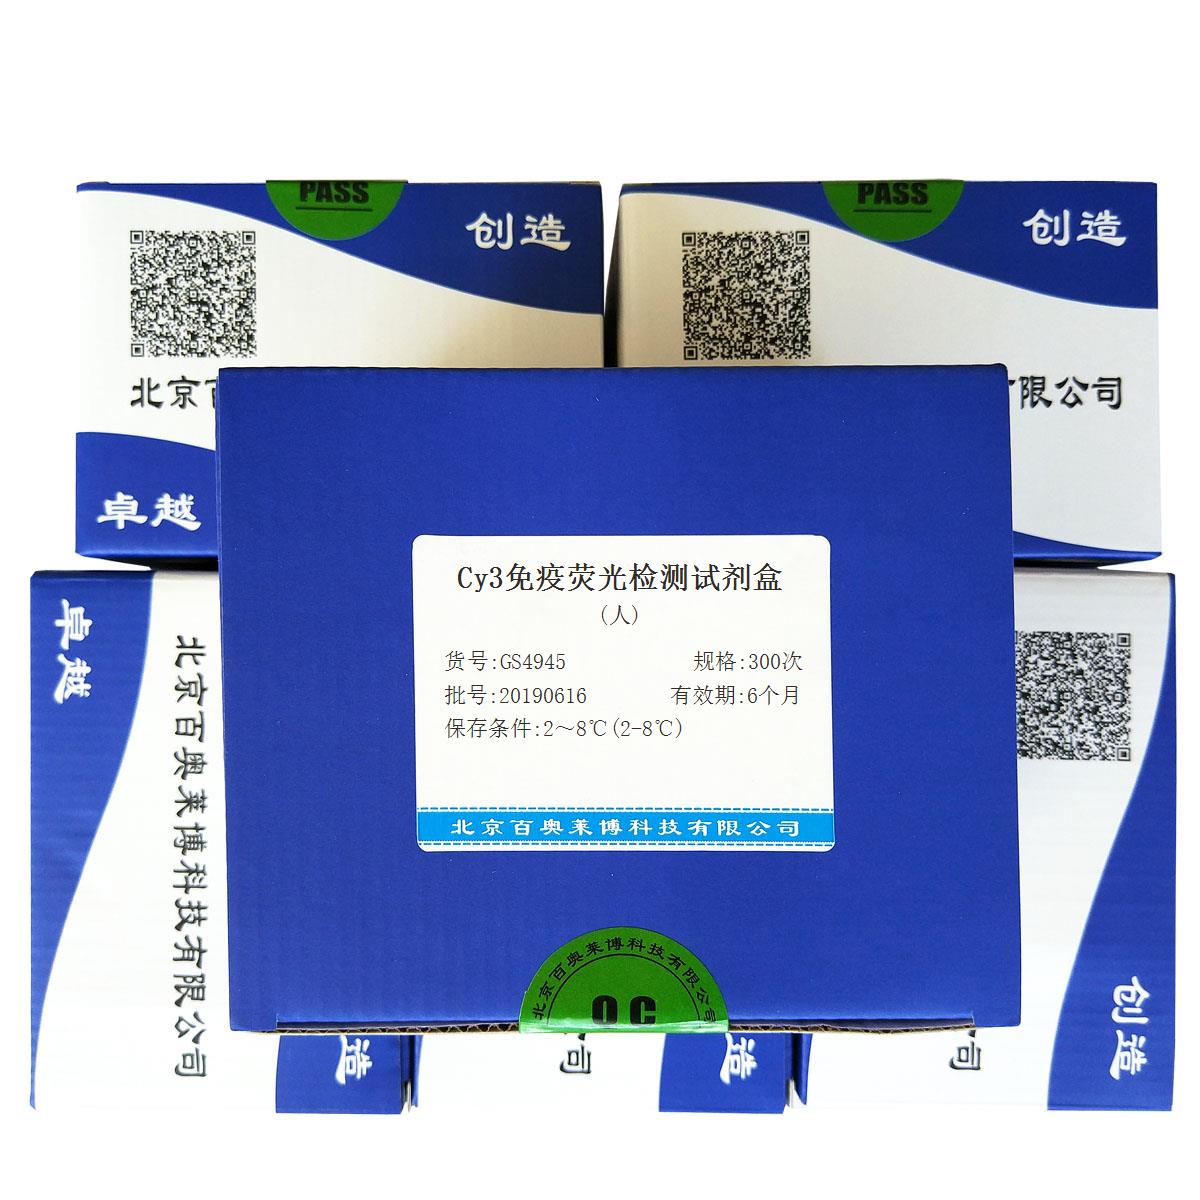 Cy3免疫荧光检测试剂盒(人)北京供应商